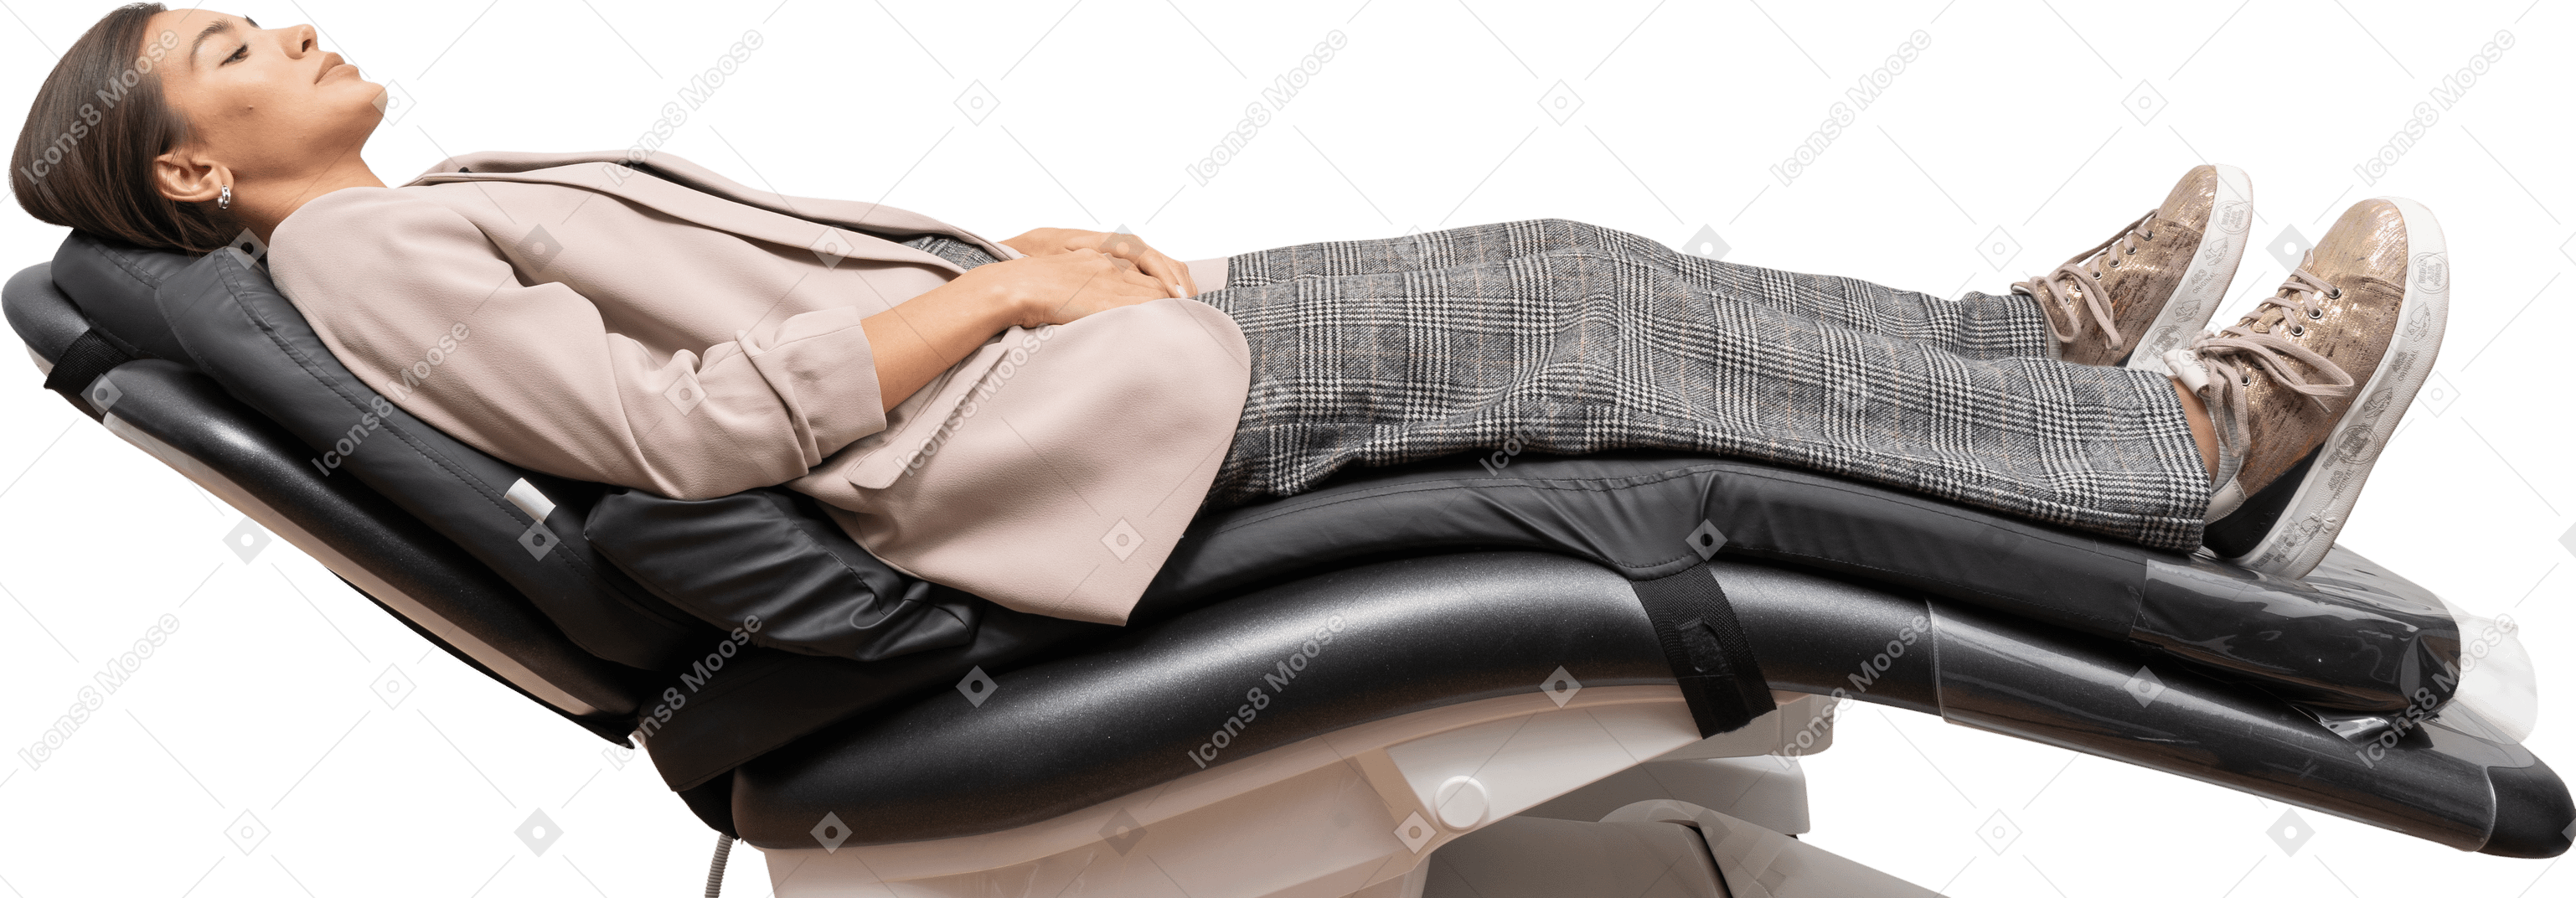 Pleine longueur d'une patiente endormie allongée sur une chaise d'hôpital